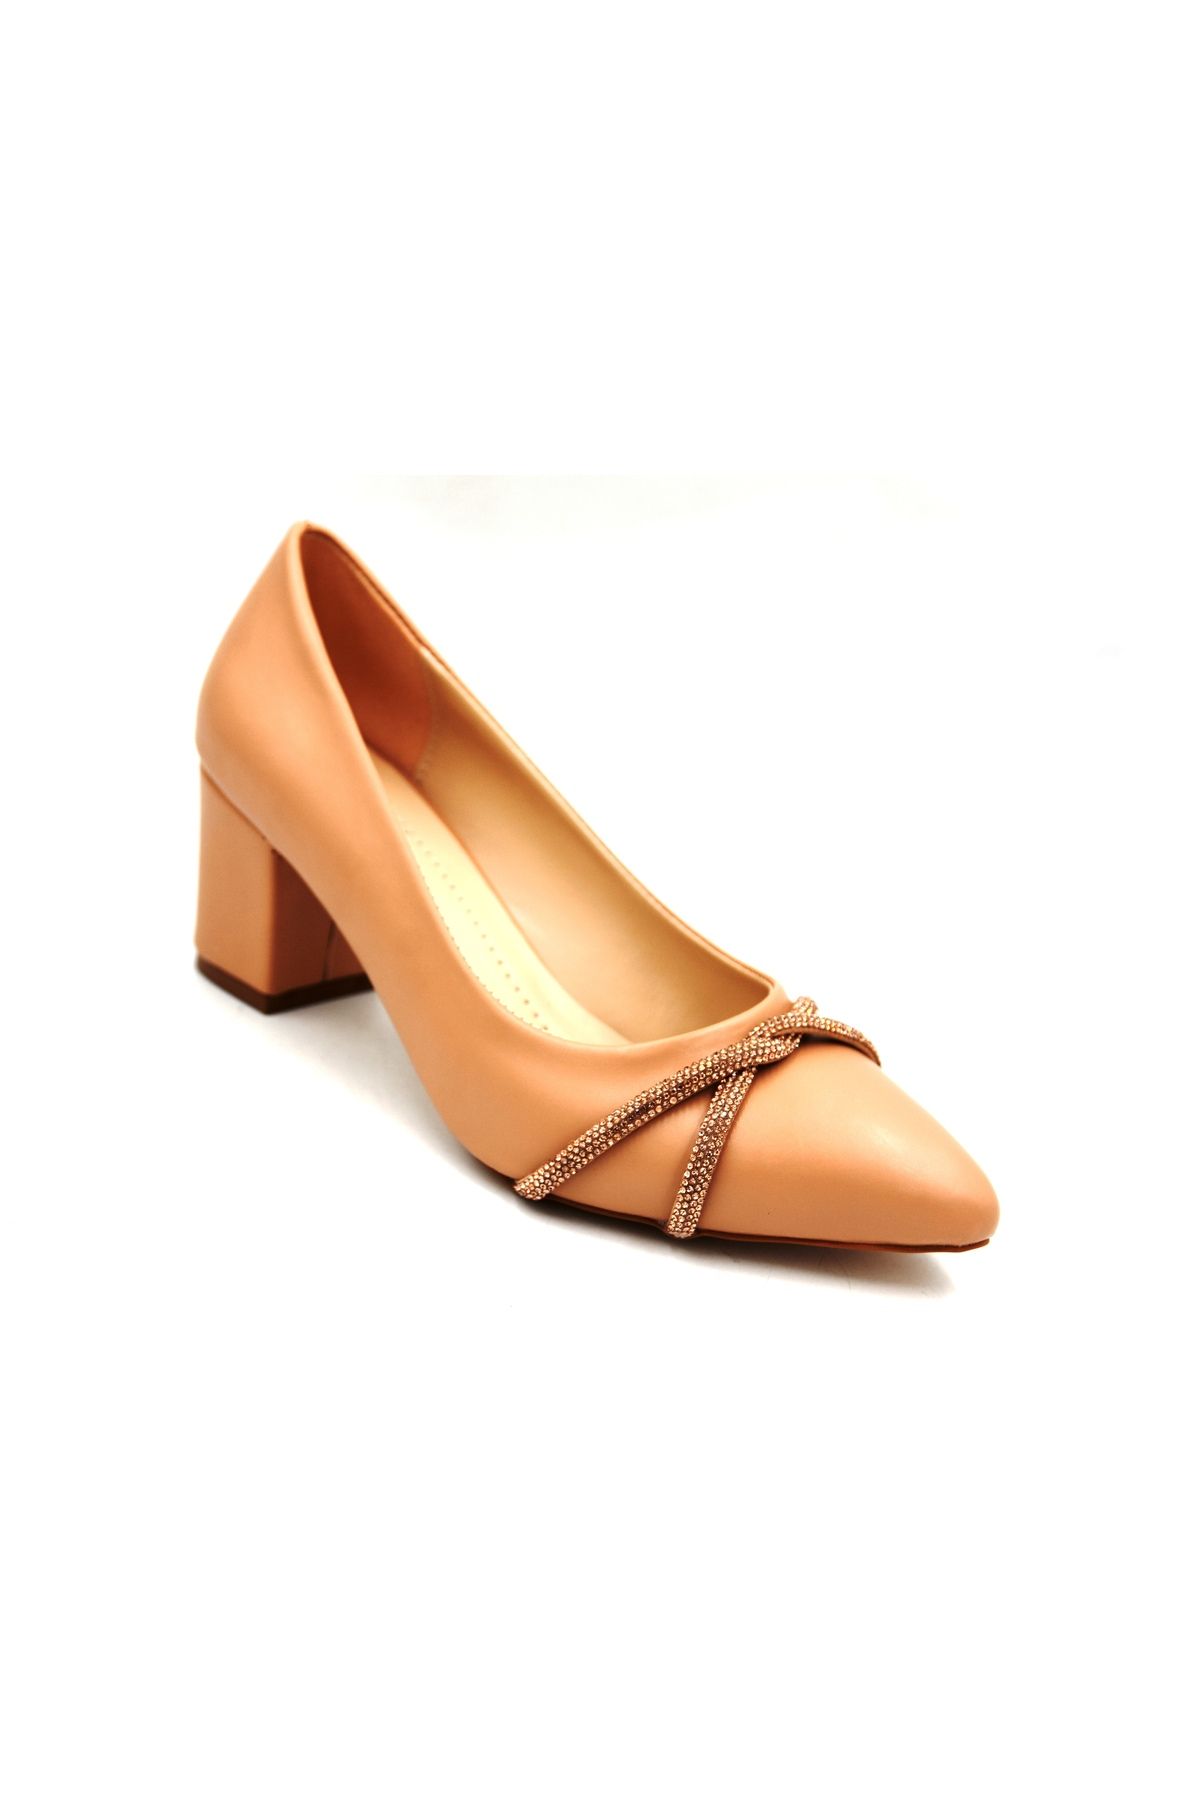 Prego (Oc Shoes) Kalın Topuklu Taş Biye Desenlik Kadın Ayakkabı NUT